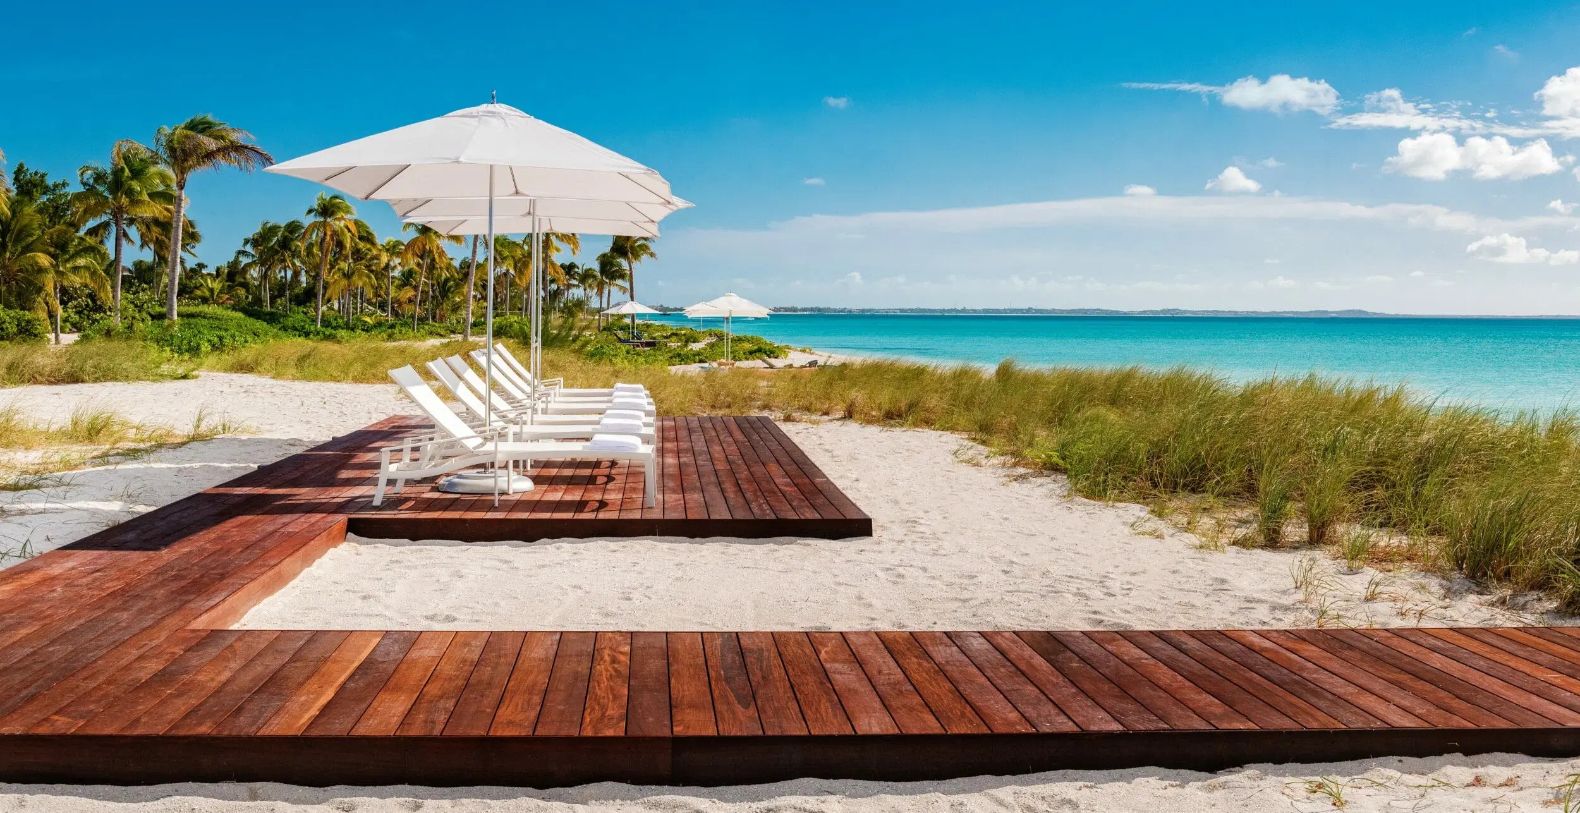 Vision Beach Turks & Caicos Vacation Villa - Grace Bay, Providenciales